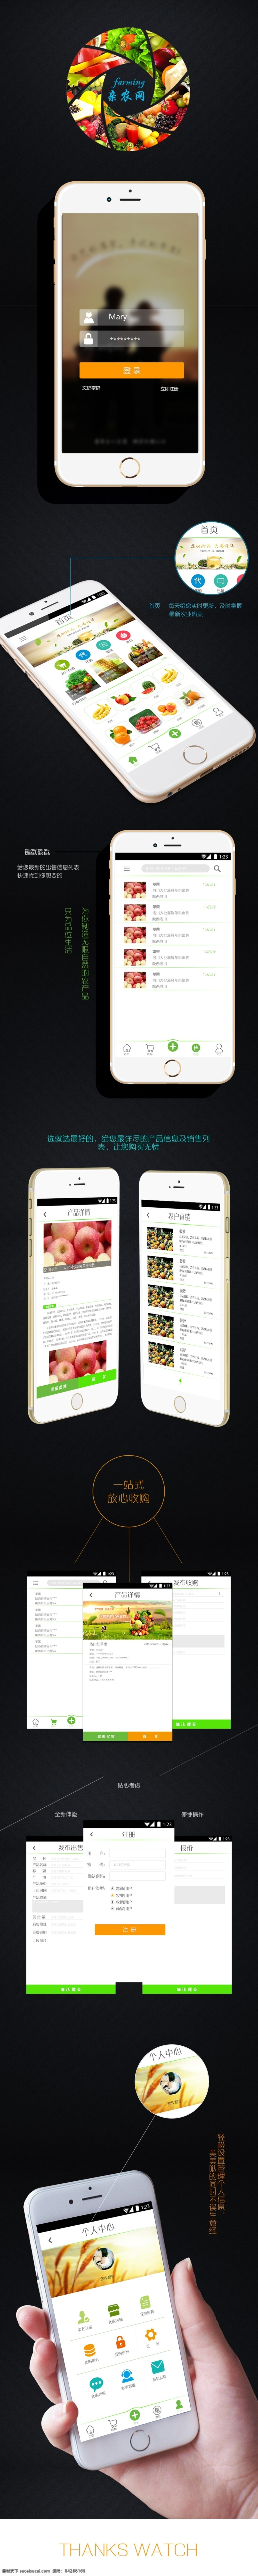 农业 app 展示 效果 app展示图 效果图 农业app 黑色背景 简约展示效果